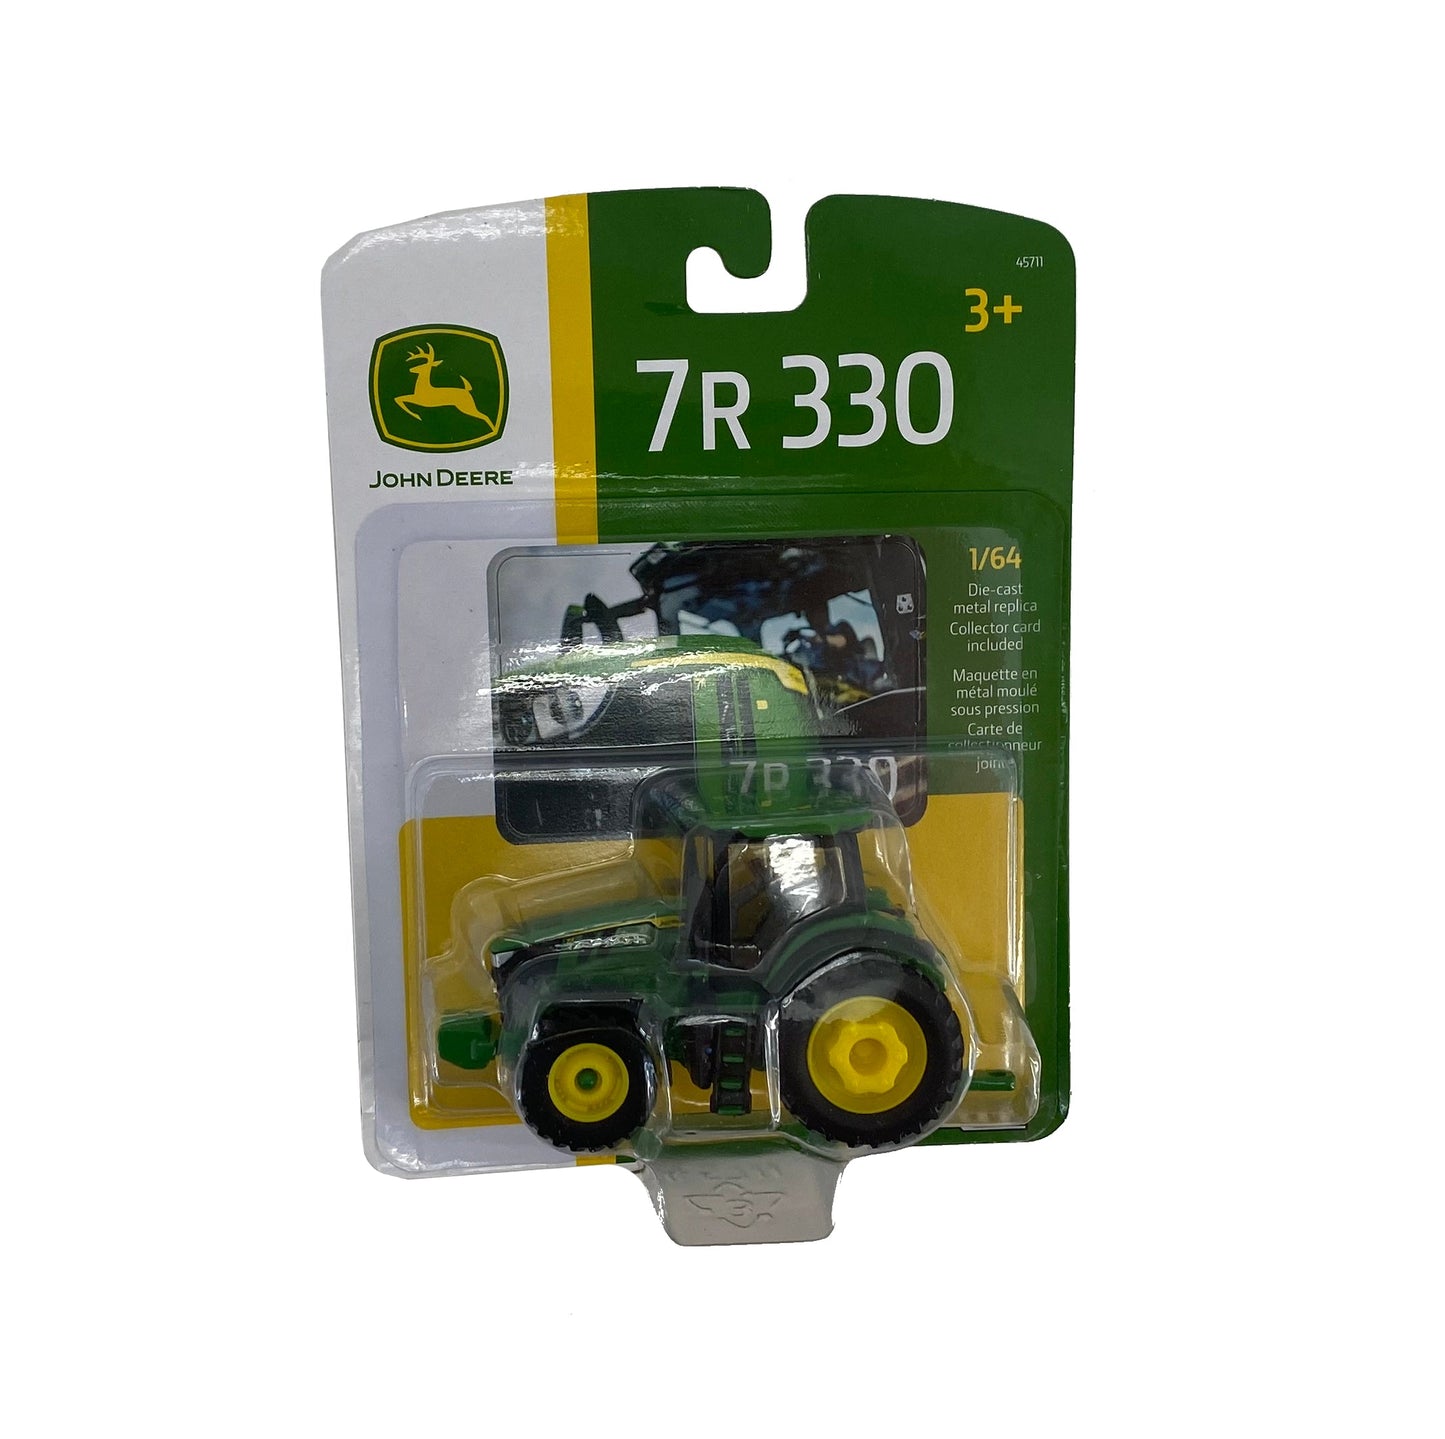 John Deere 1/64 7R 330 Tractor - LP70970